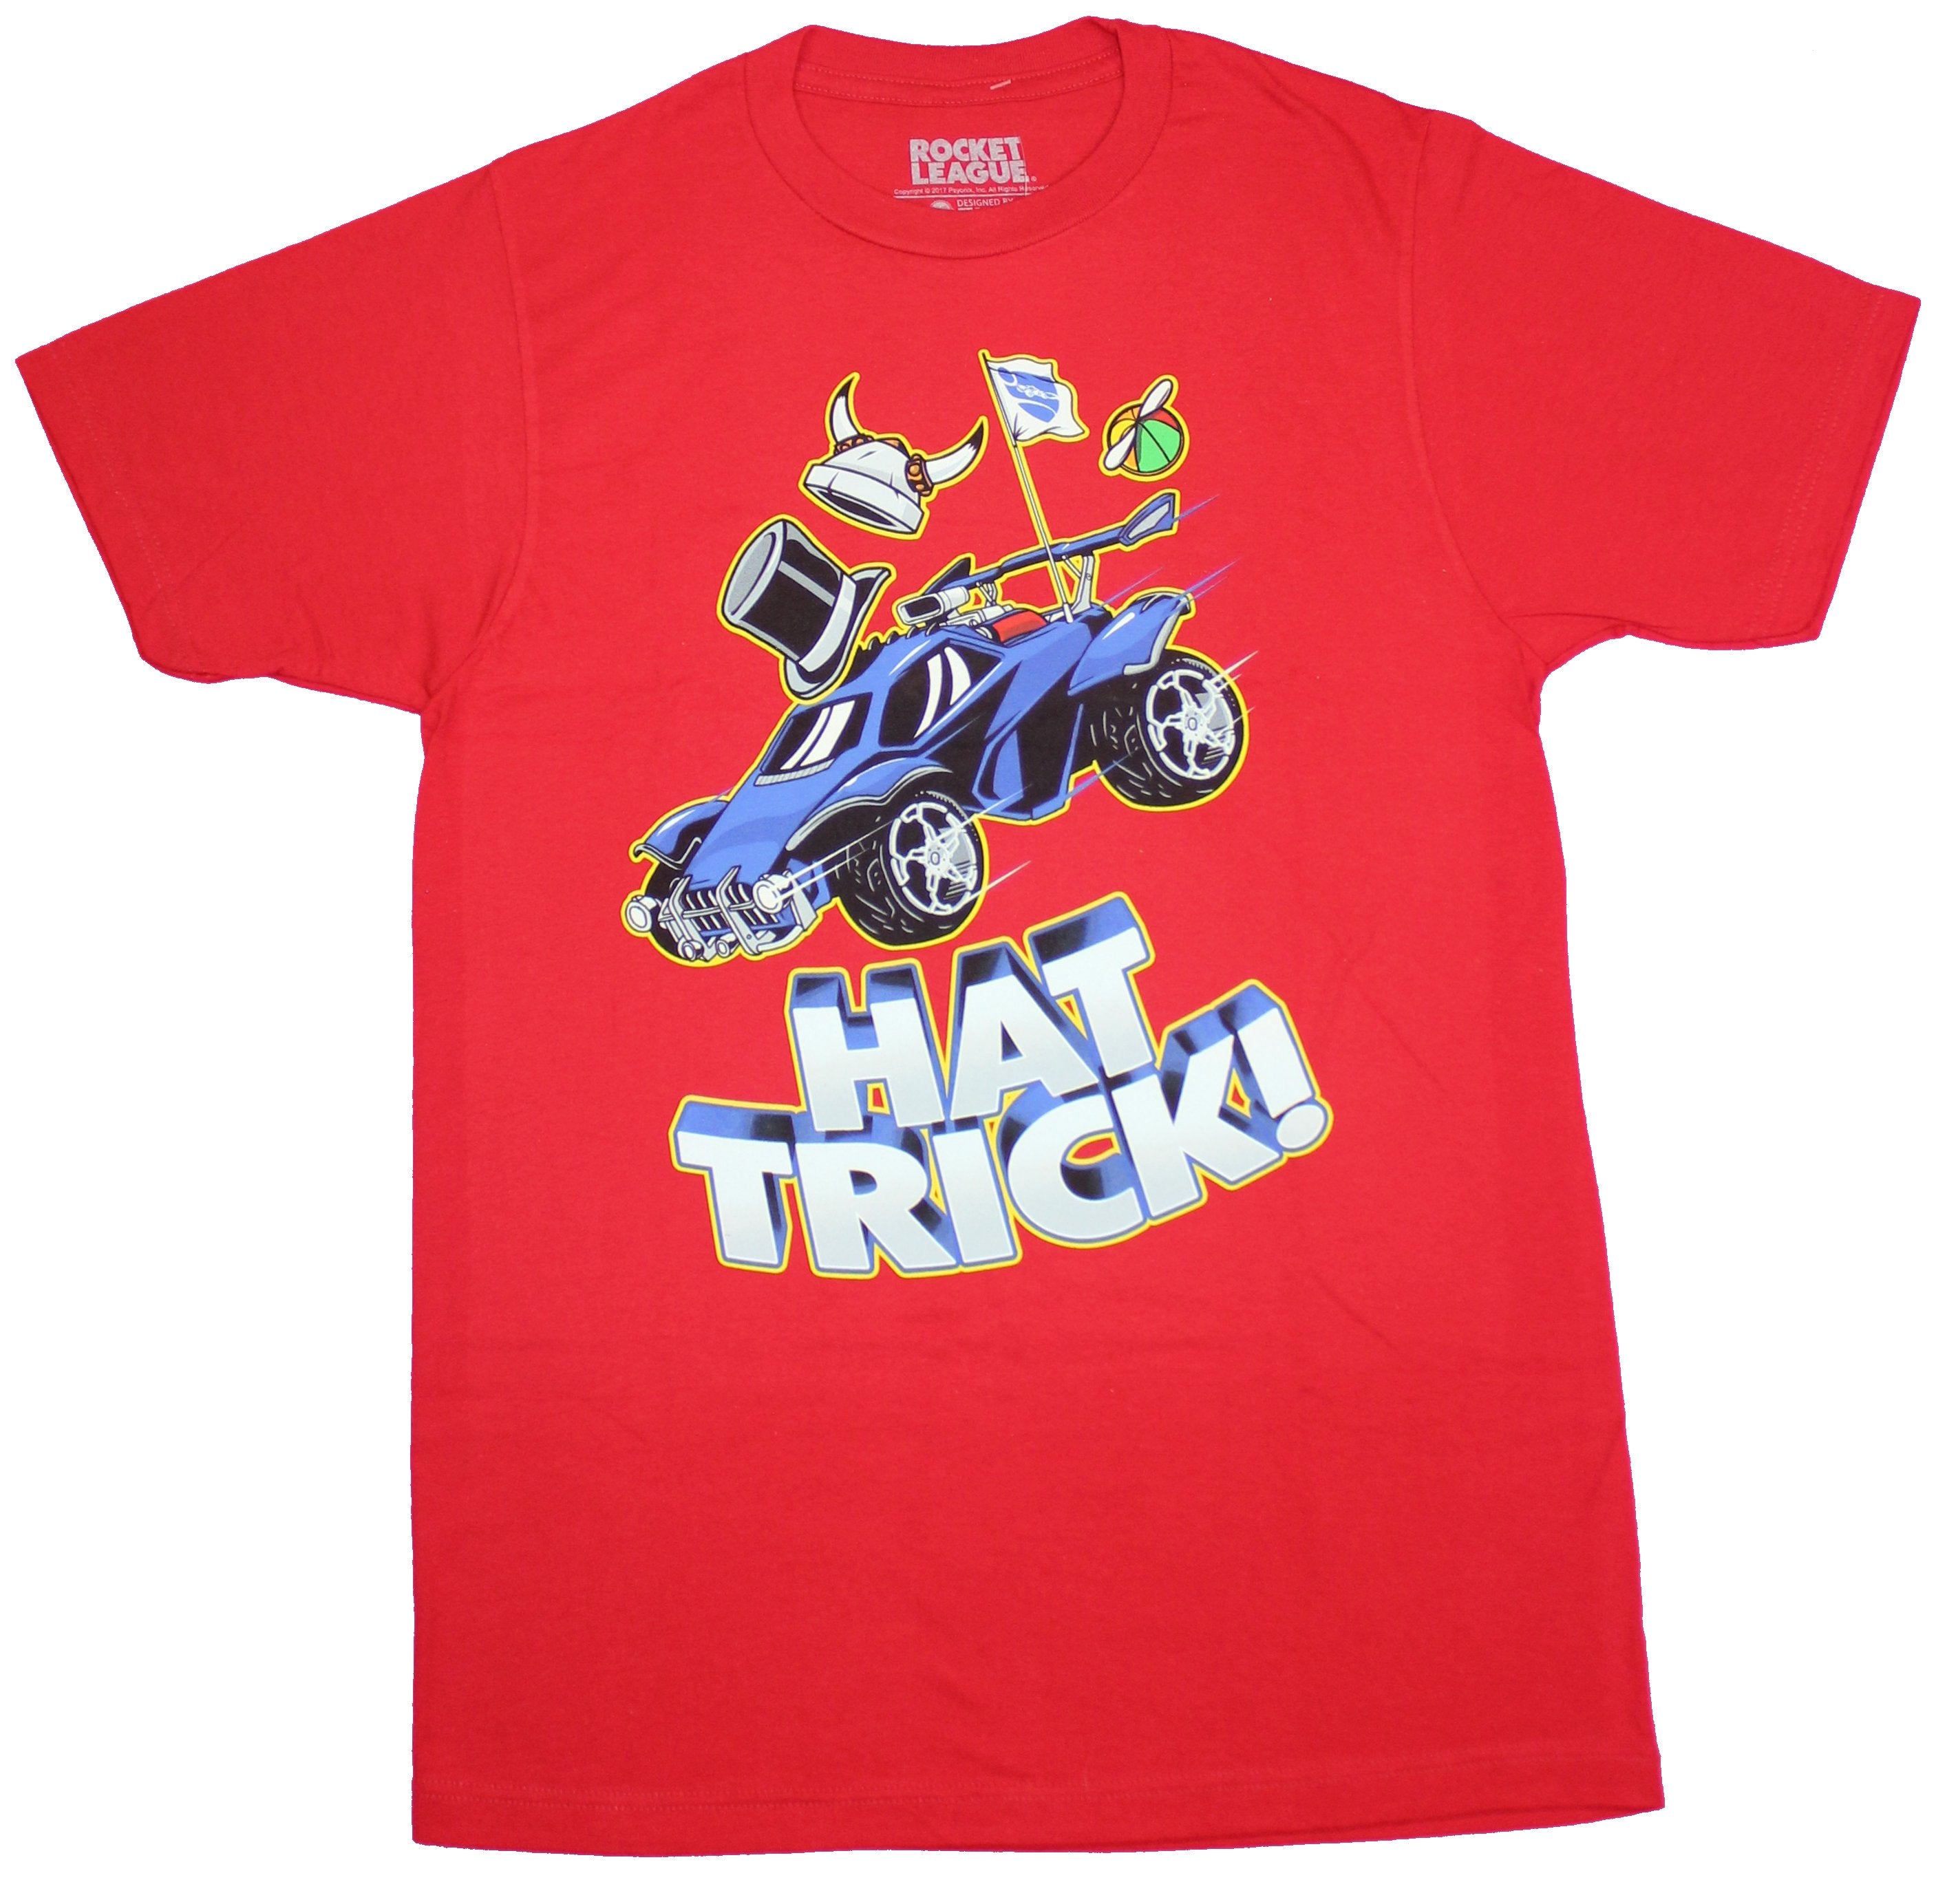 Rocket League Mens T-Shirt- Hat Trick Blue Car